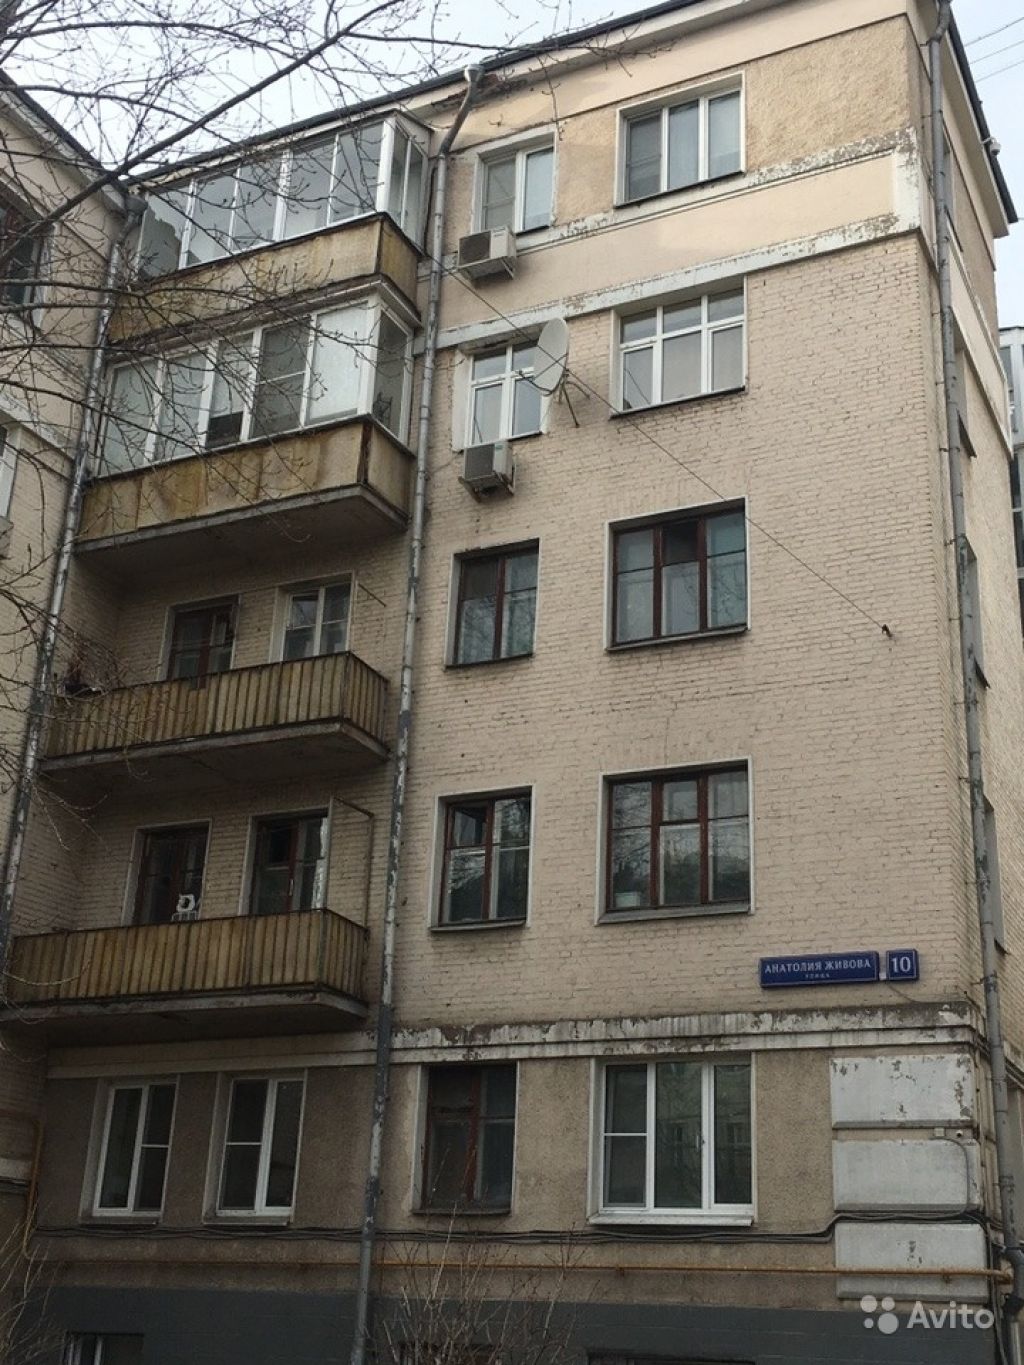 Продам квартиру 4-к квартира 71.1 м² на 3 этаже 6-этажного кирпичного дома в Москве. Фото 1